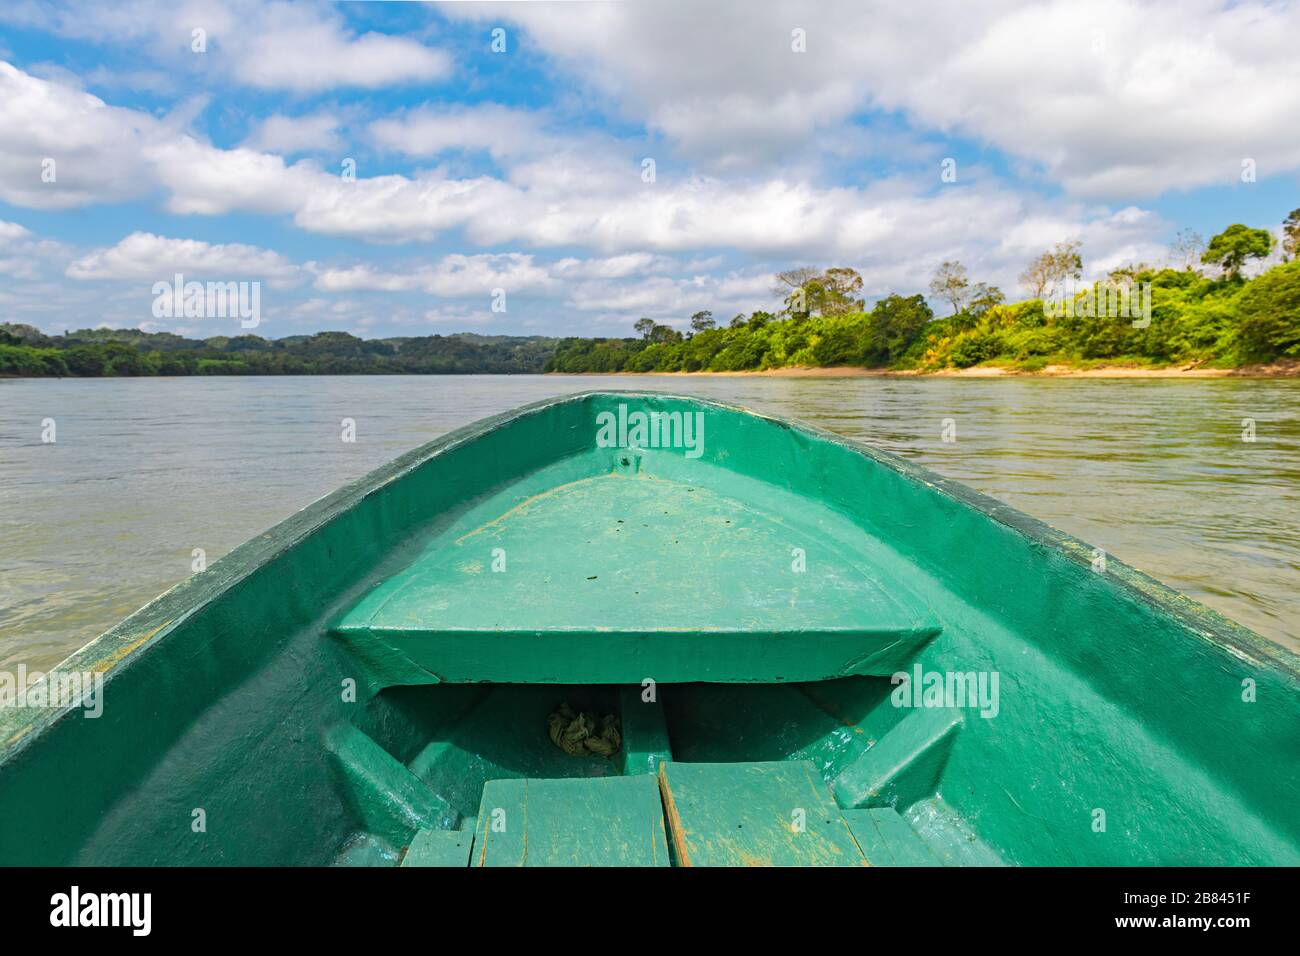 Der Fluss Usumacinta, die internationale Grenze zwischen Guatemala und Mexiko, von einem Boot aus gesehen. Boot ist scharf, Regenwald und Flussufer unscharf. Stockfoto